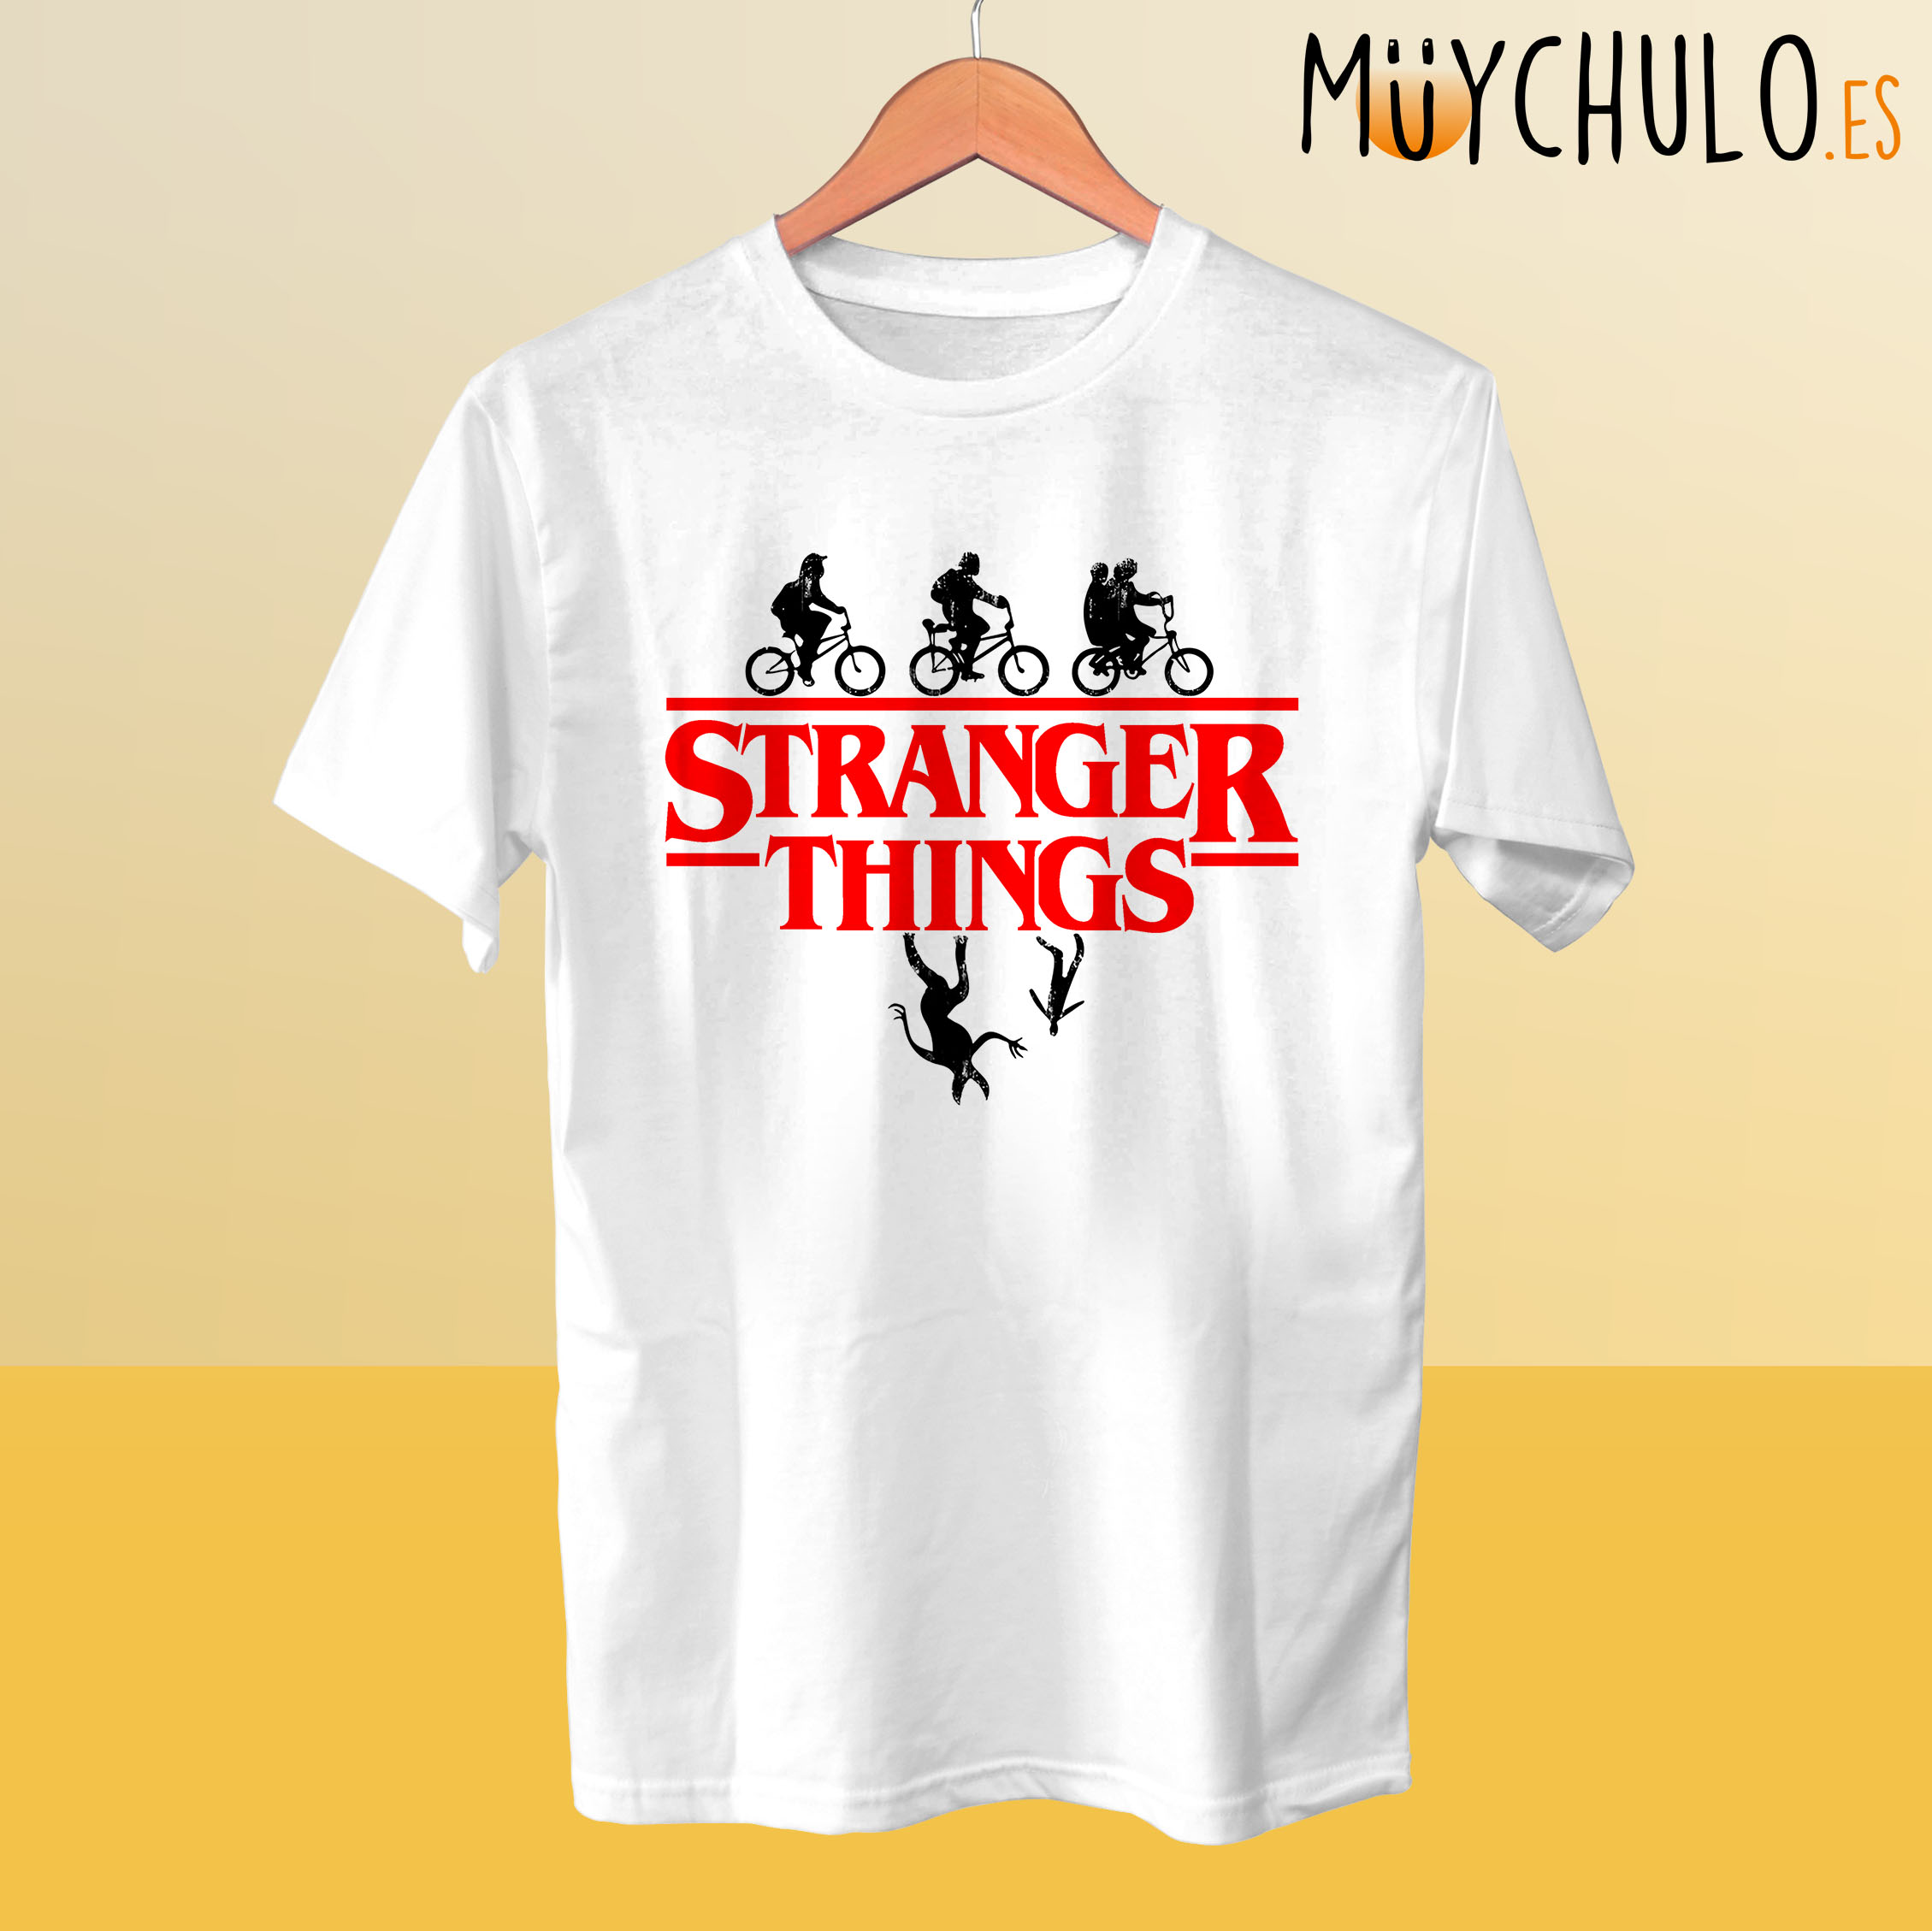 Estragos innovación Cinemática Camiseta STRANGER THINGS - Muychulo Regalos Originales FRIKI